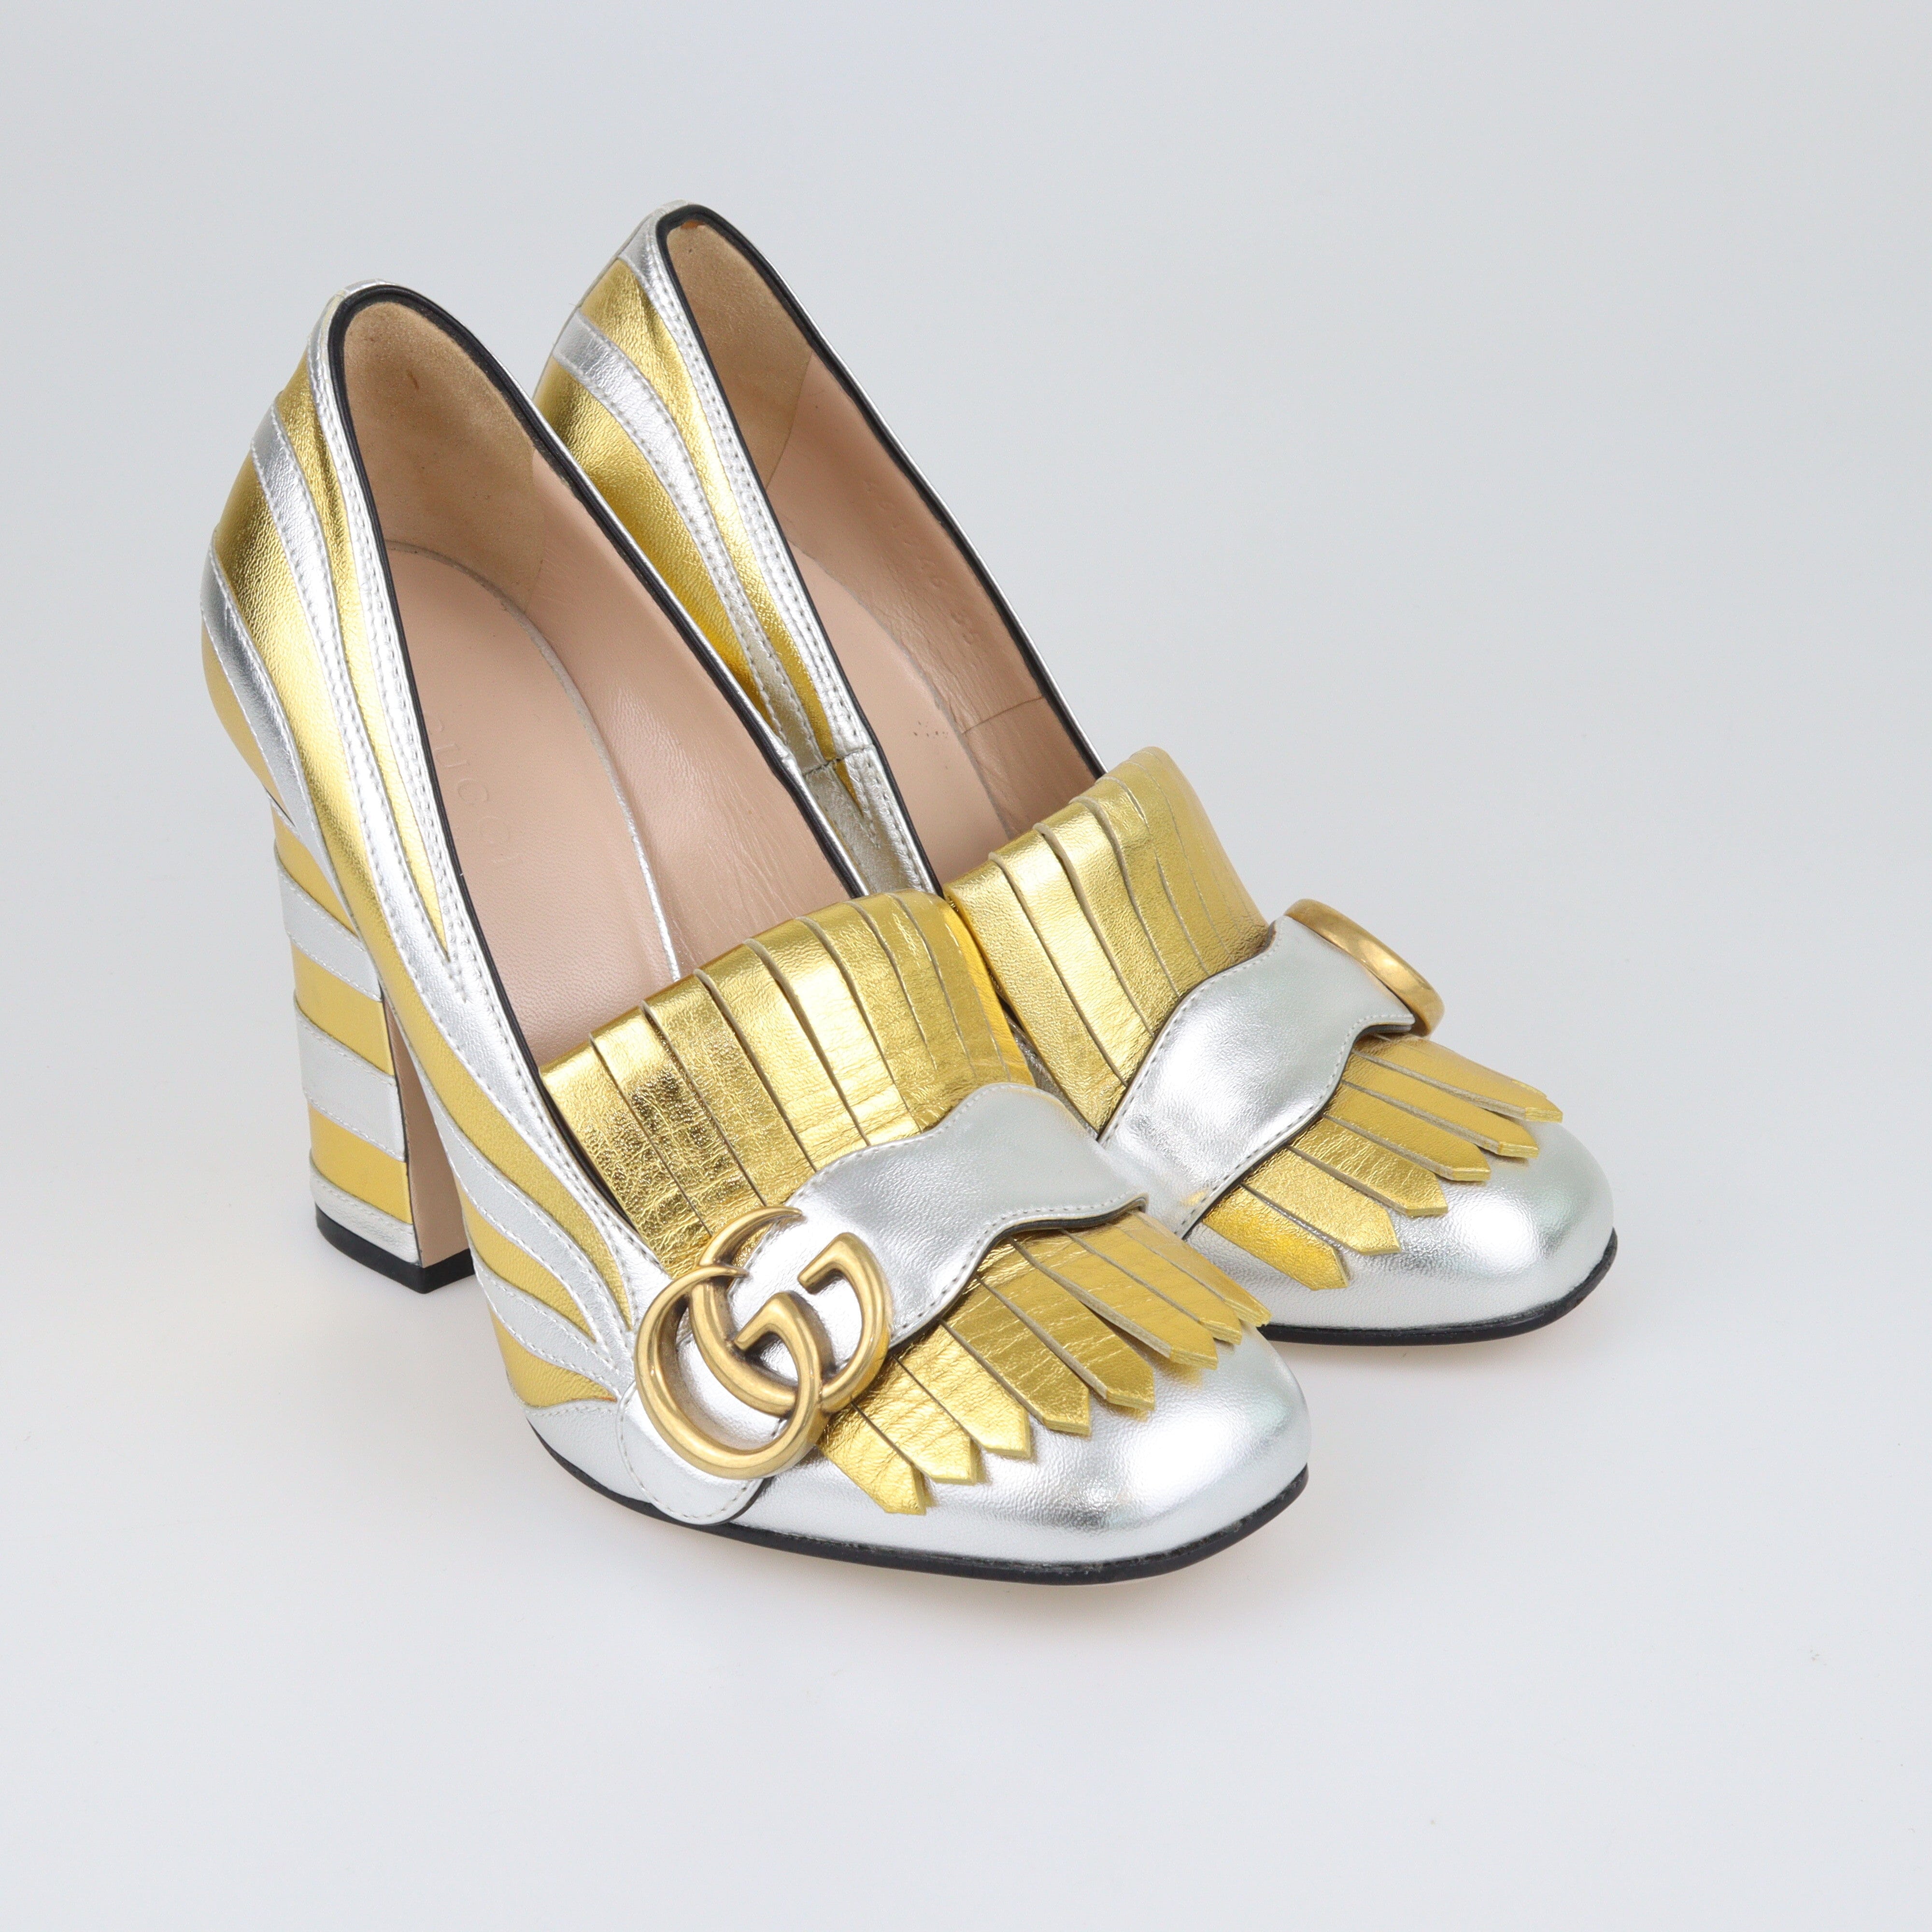 Silver/Gold Marmont Zebra Print Pumps Shoes Gucci 